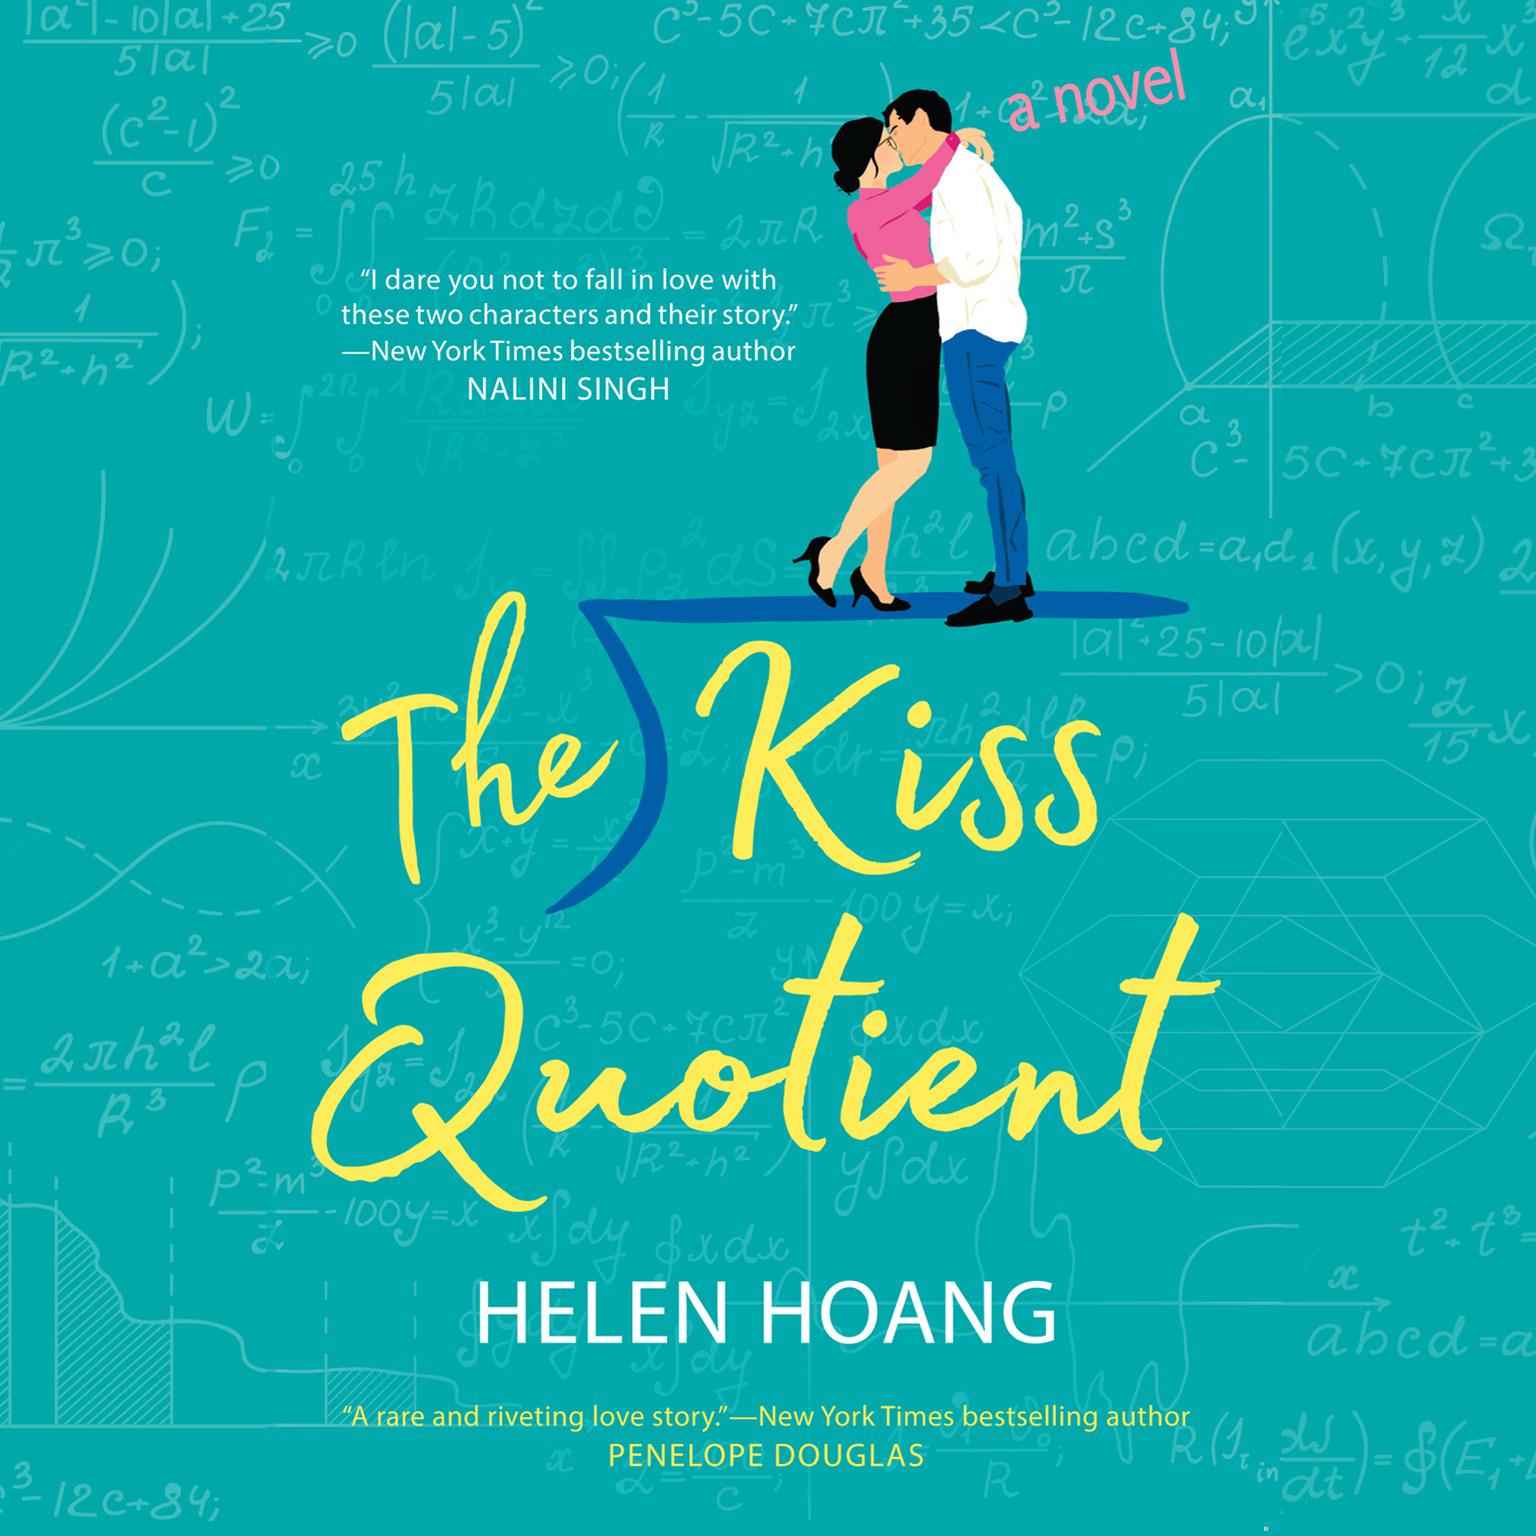 Helen Hoang: The kiss quotient (2018)